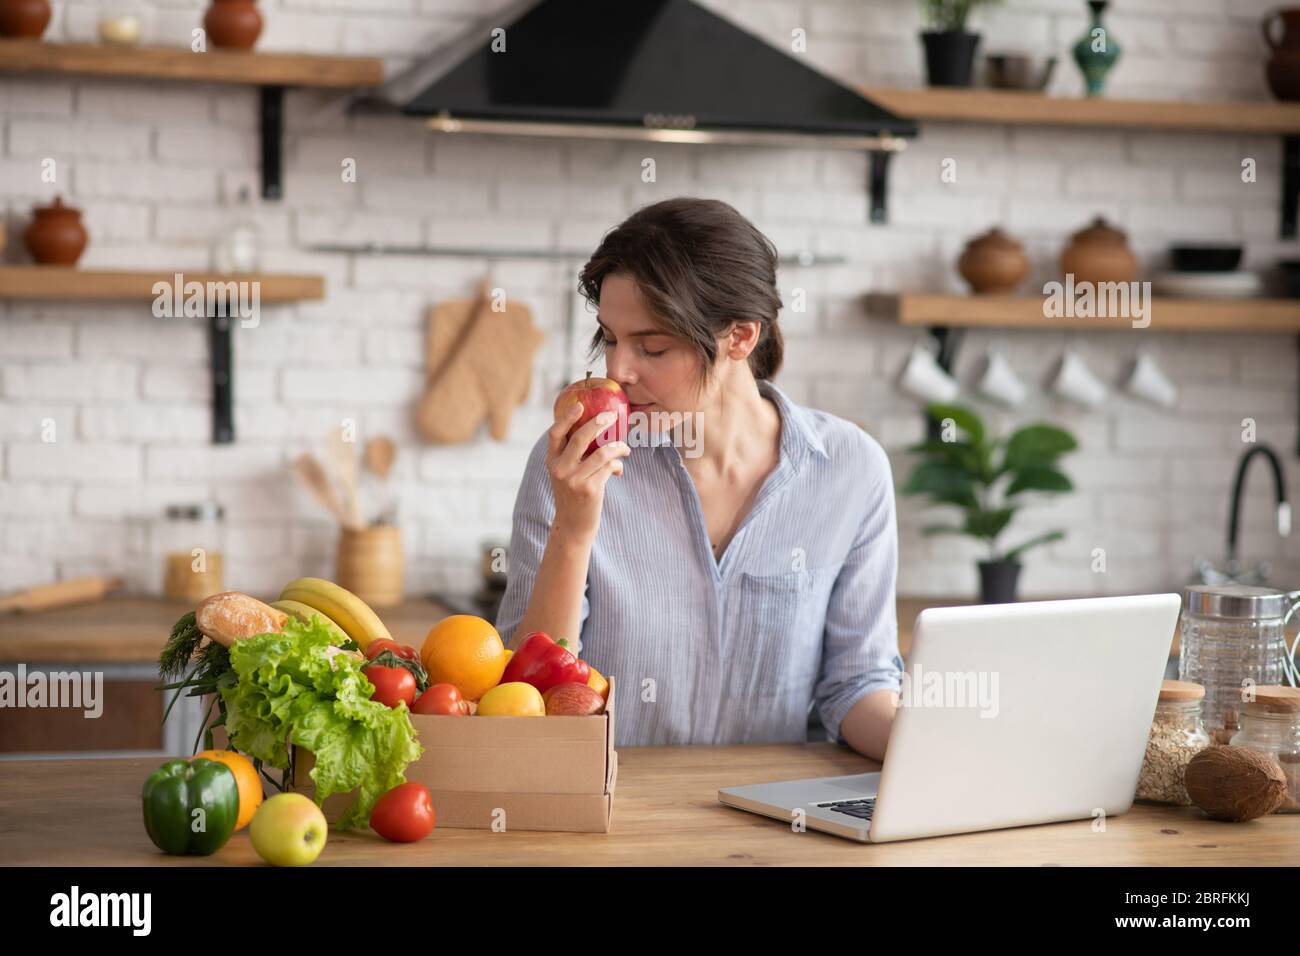 Fille en homowear gris assis à la table et sentant une pomme rouge Banque D'Images